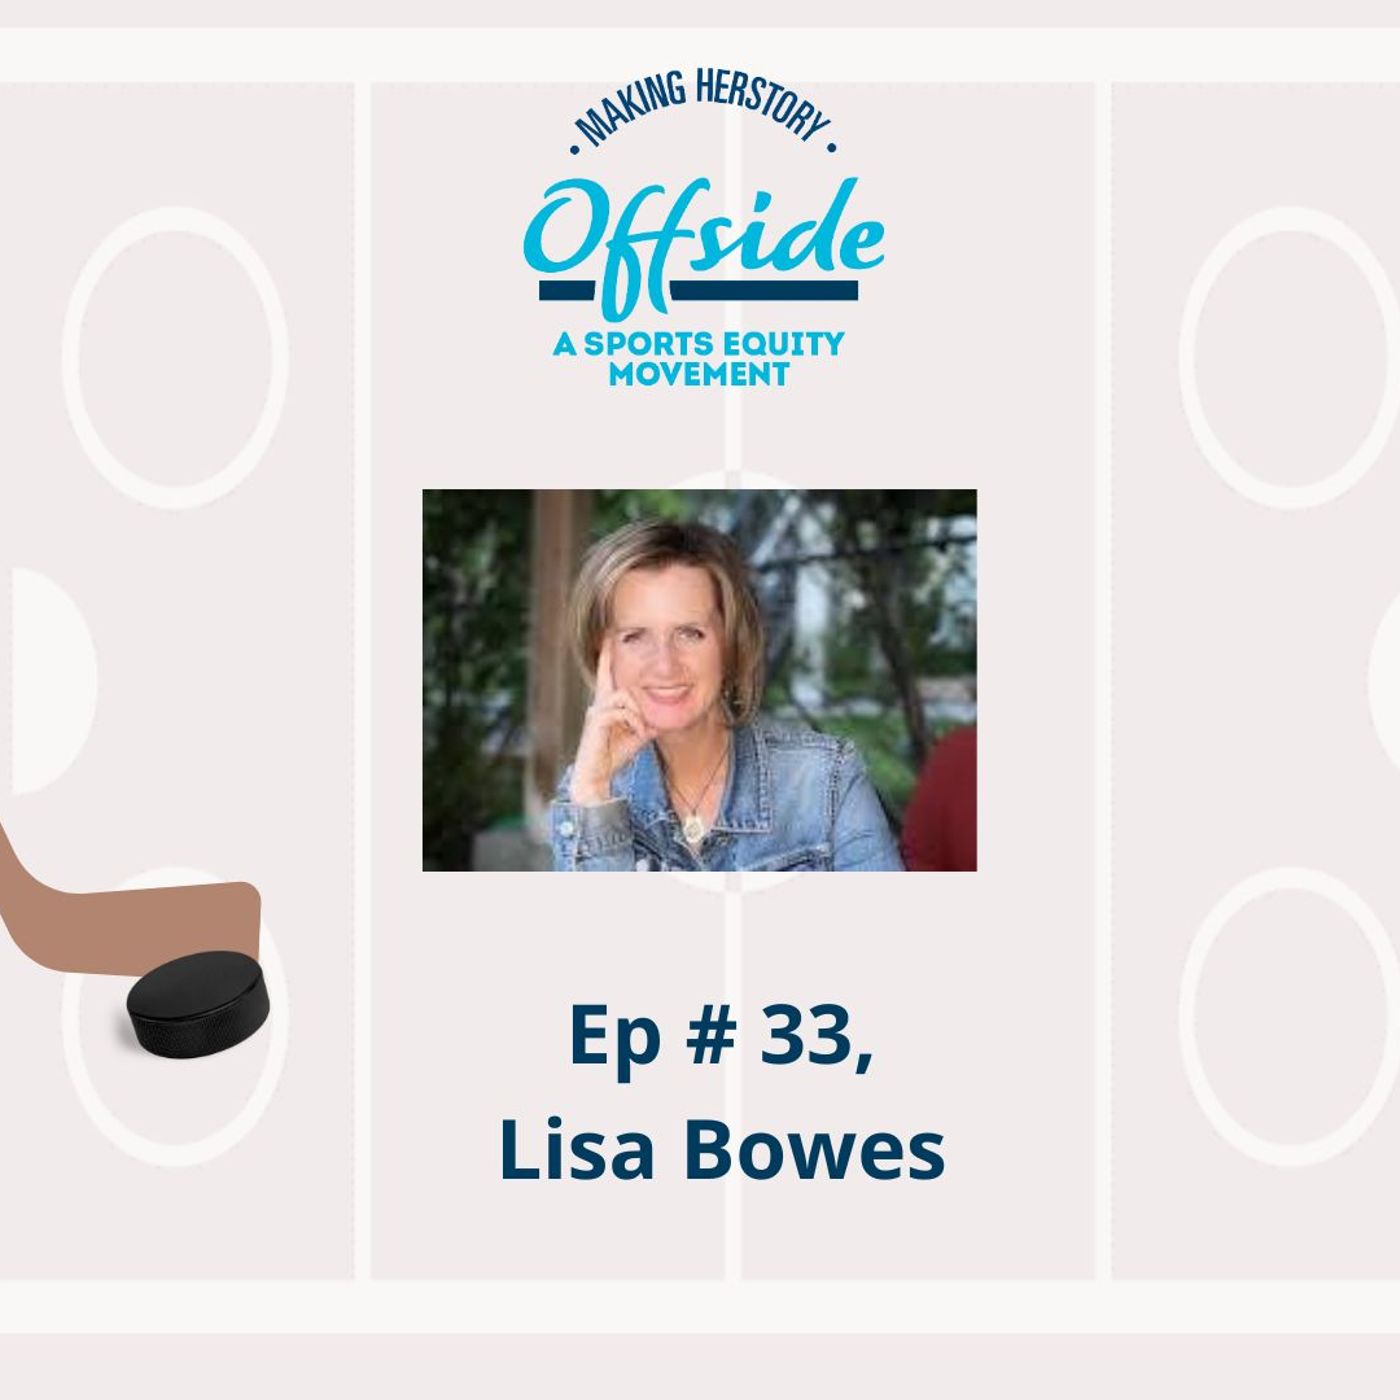 Offside Ep. #33 - Lisa Bowes